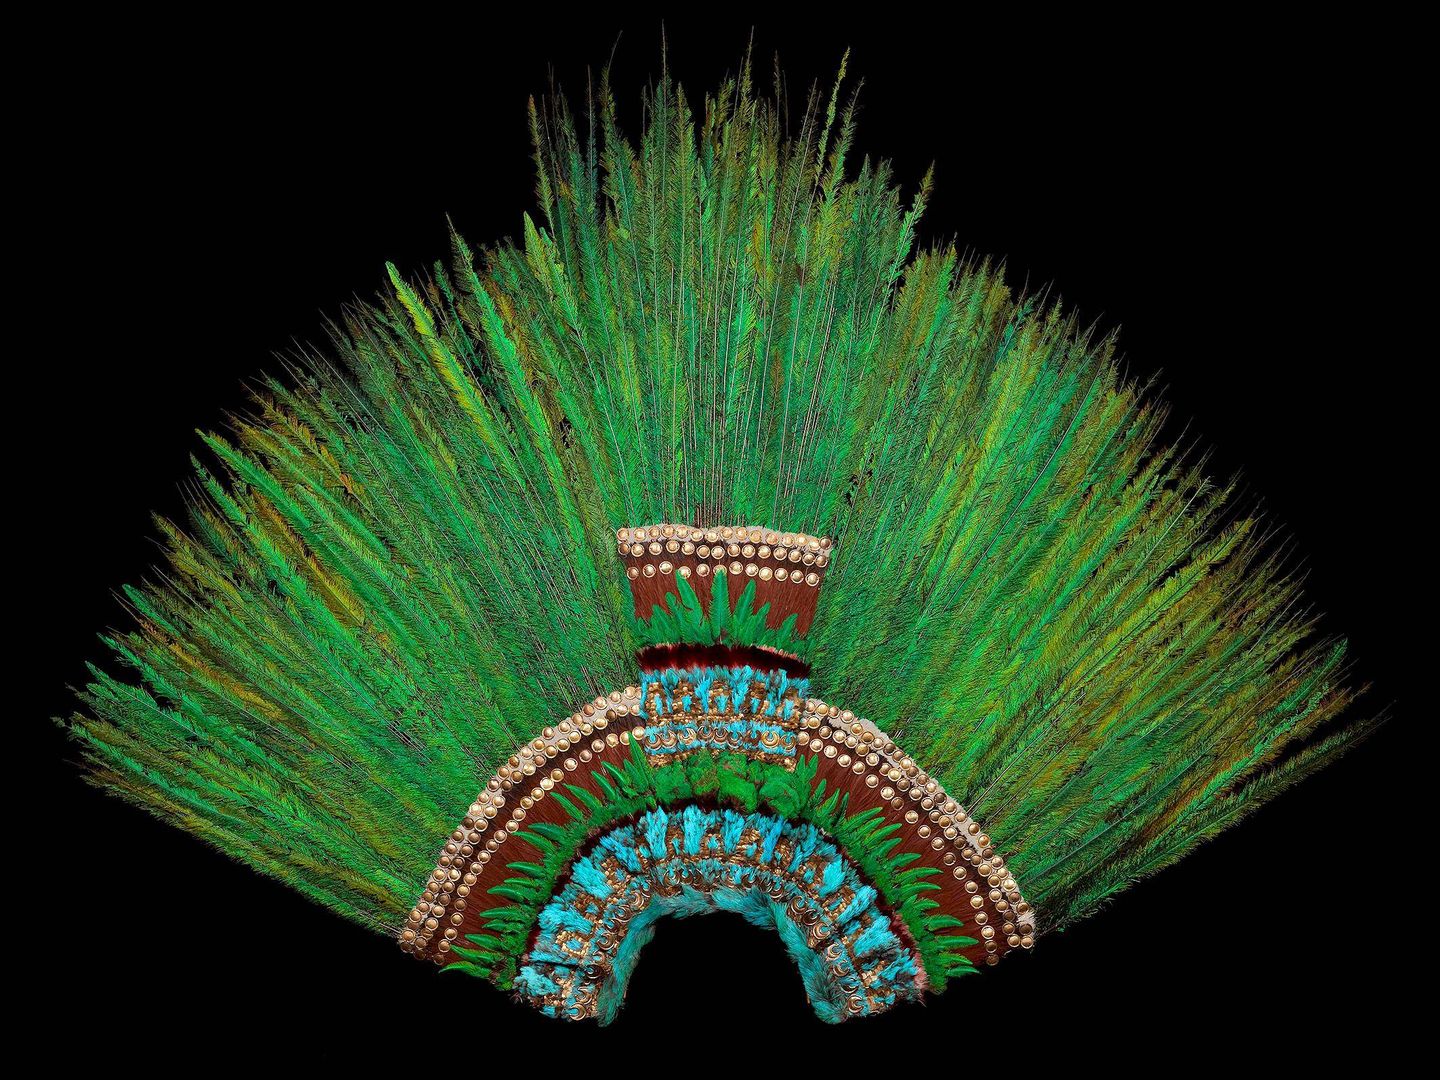 Fotografía del Penacho de Moctezuma facilitada por el Museo de Etnología de Viena (Austria).